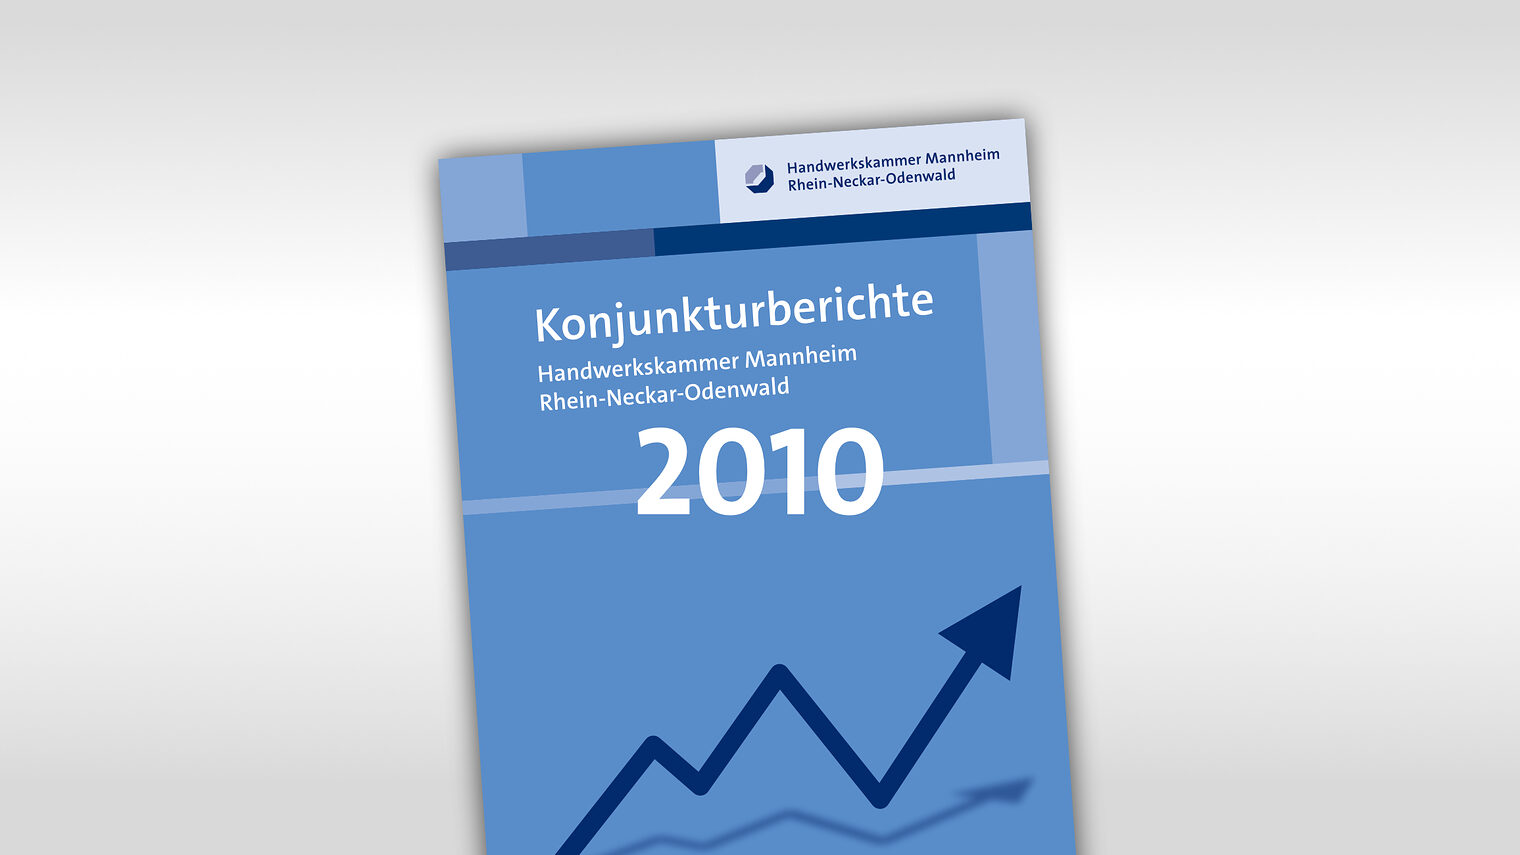 Titelmotiv Konjunkturbericht plus Jahreszahl 2010